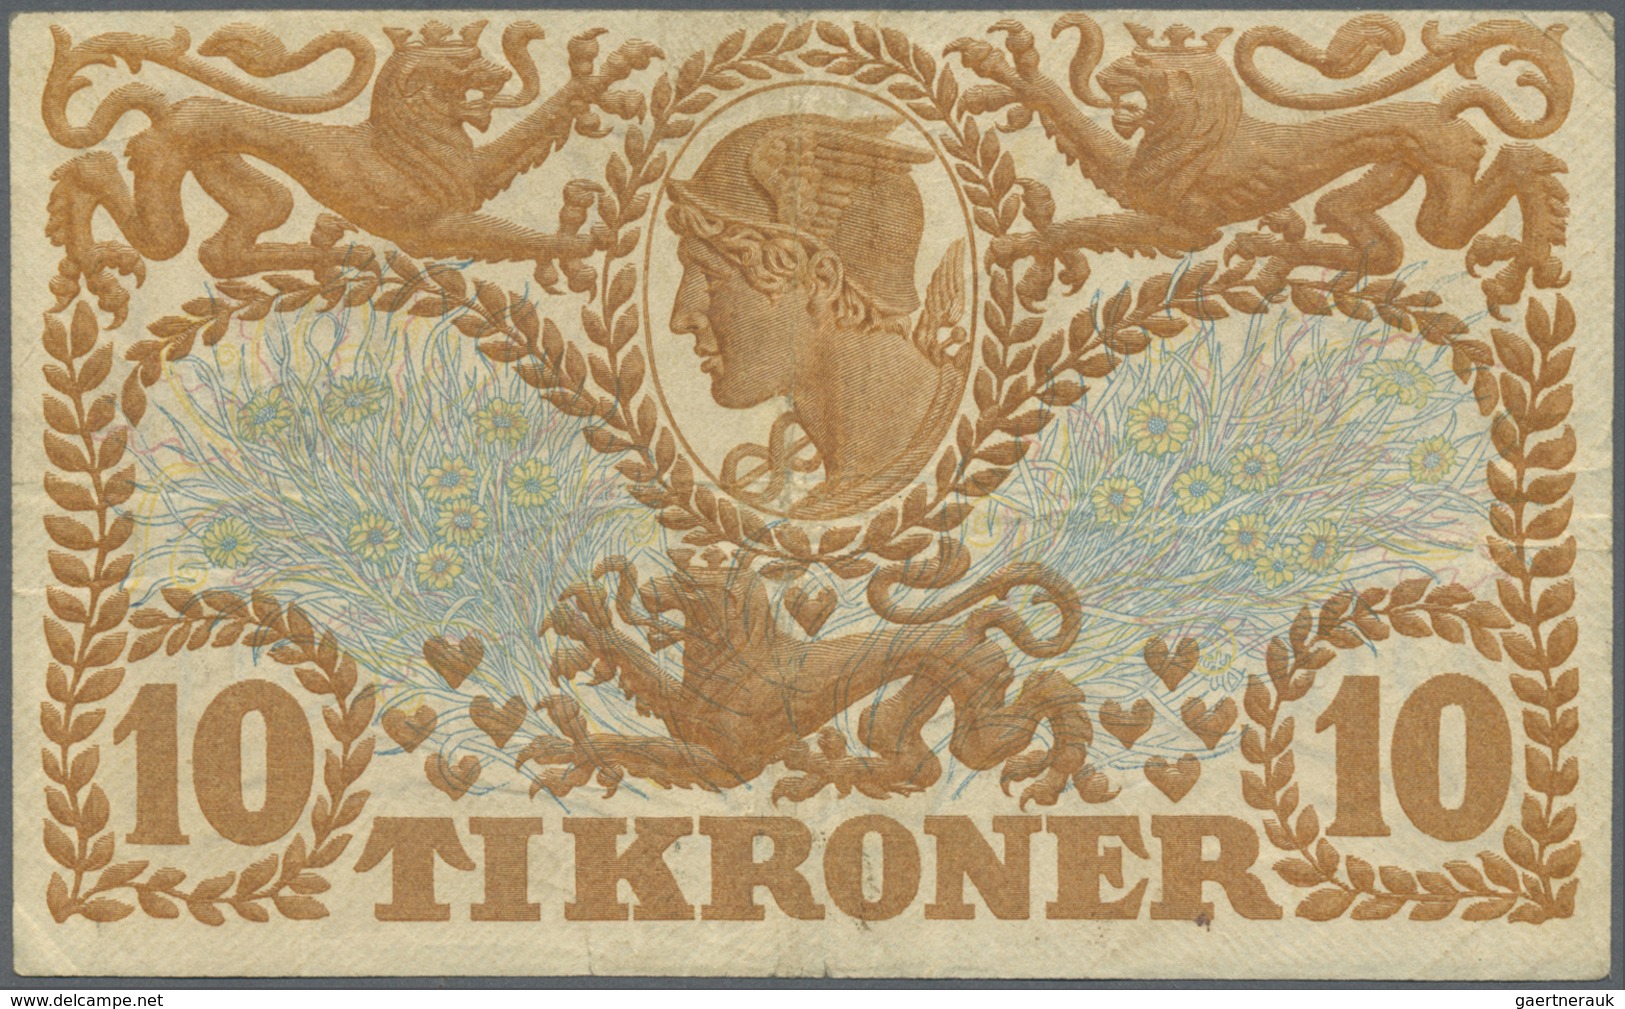 Denmark  / Dänemark: 10 Kroner 1922 P. 21n, Rarer Early Date With Vertical And Horizontal Folds, No - Danemark